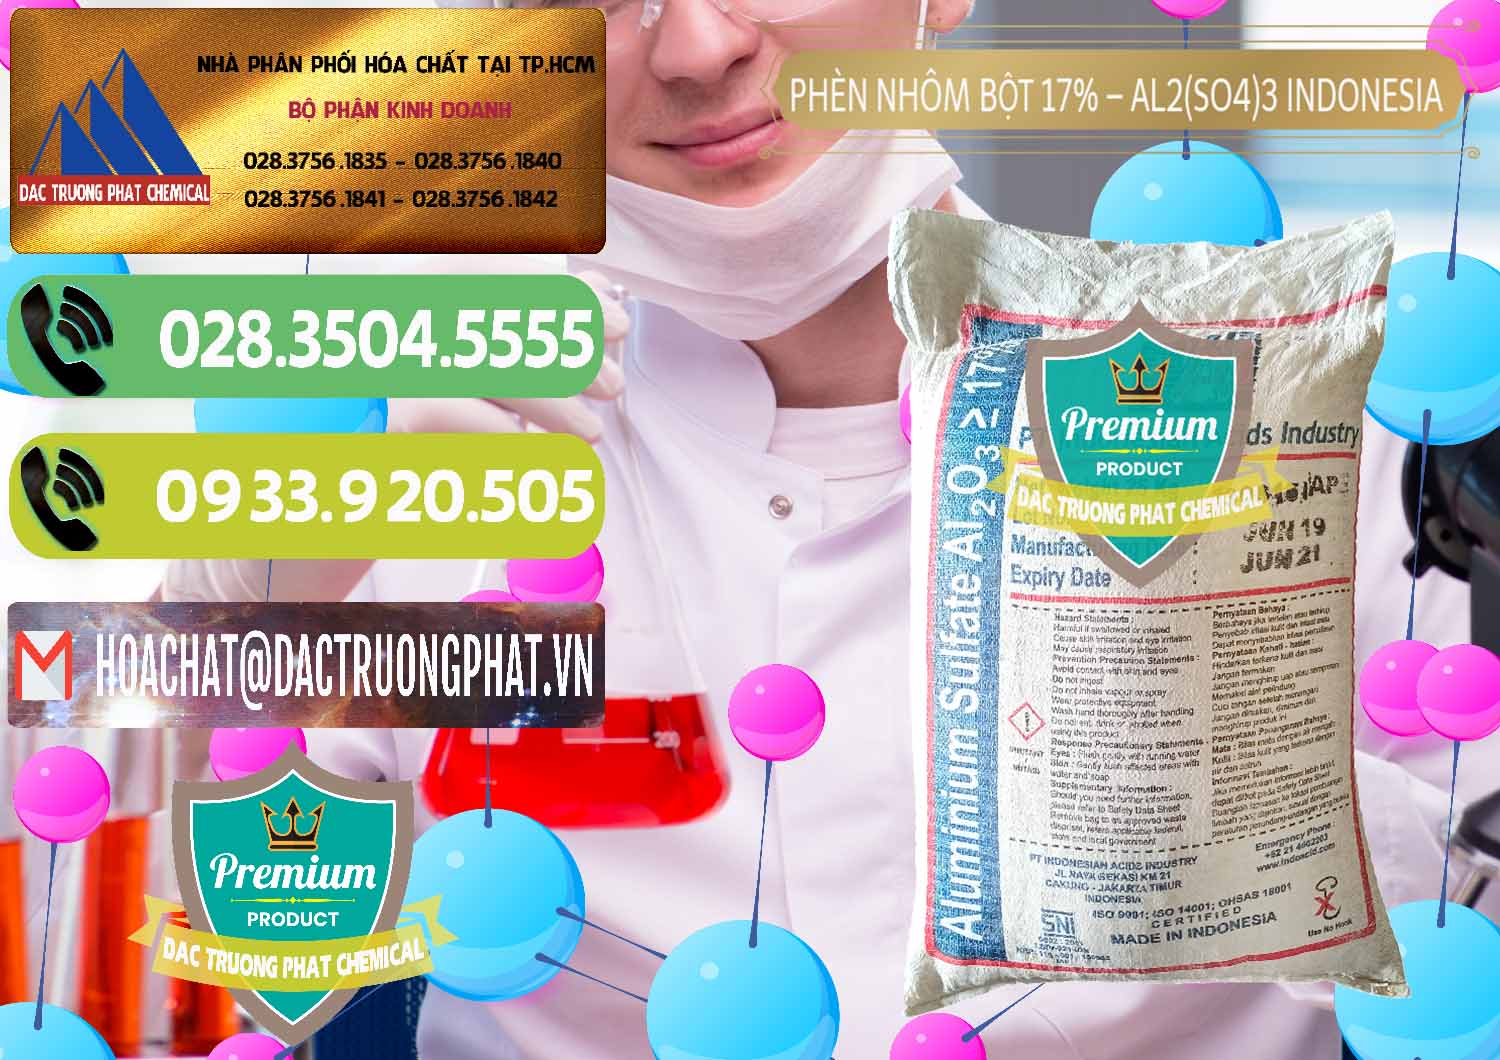 Cty nhập khẩu và bán Phèn Nhôm Bột - Al2(SO4)3 17% bao 25kg Indonesia - 0114 - Chuyên bán & cung cấp hóa chất tại TP.HCM - hoachatmientay.vn